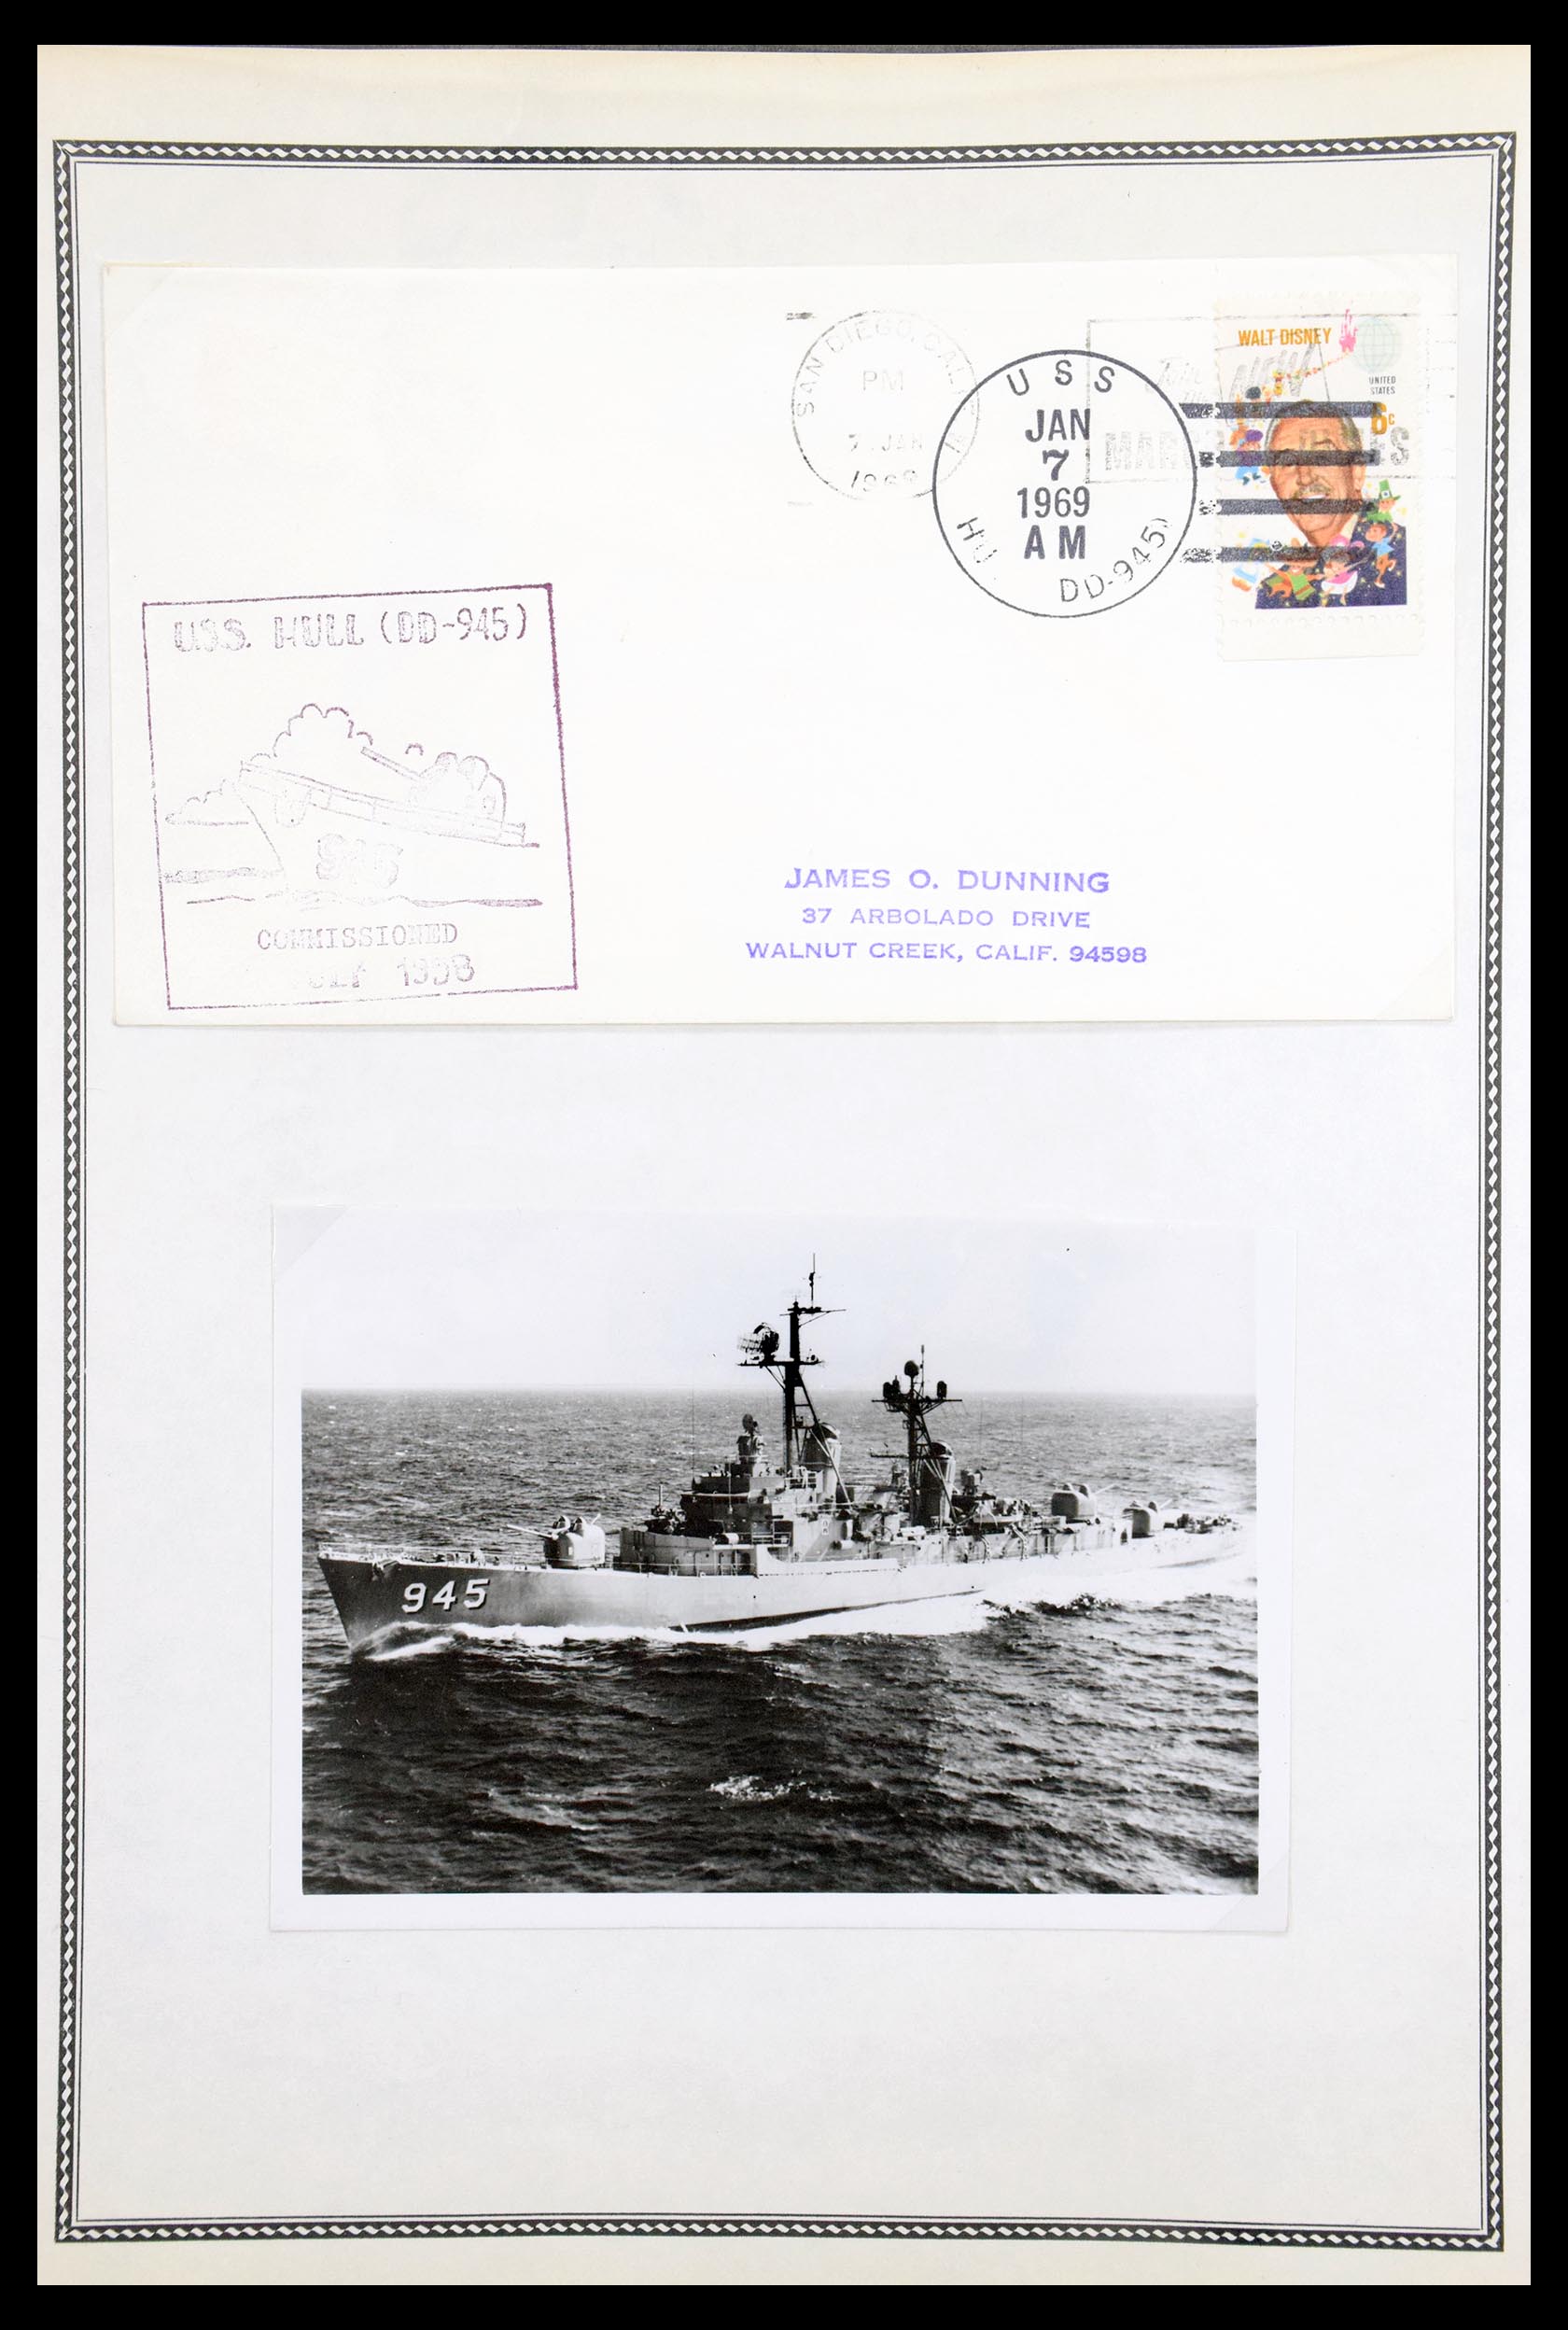 30341 067 - 30341 USA scheepspost brieven 1930-1970.